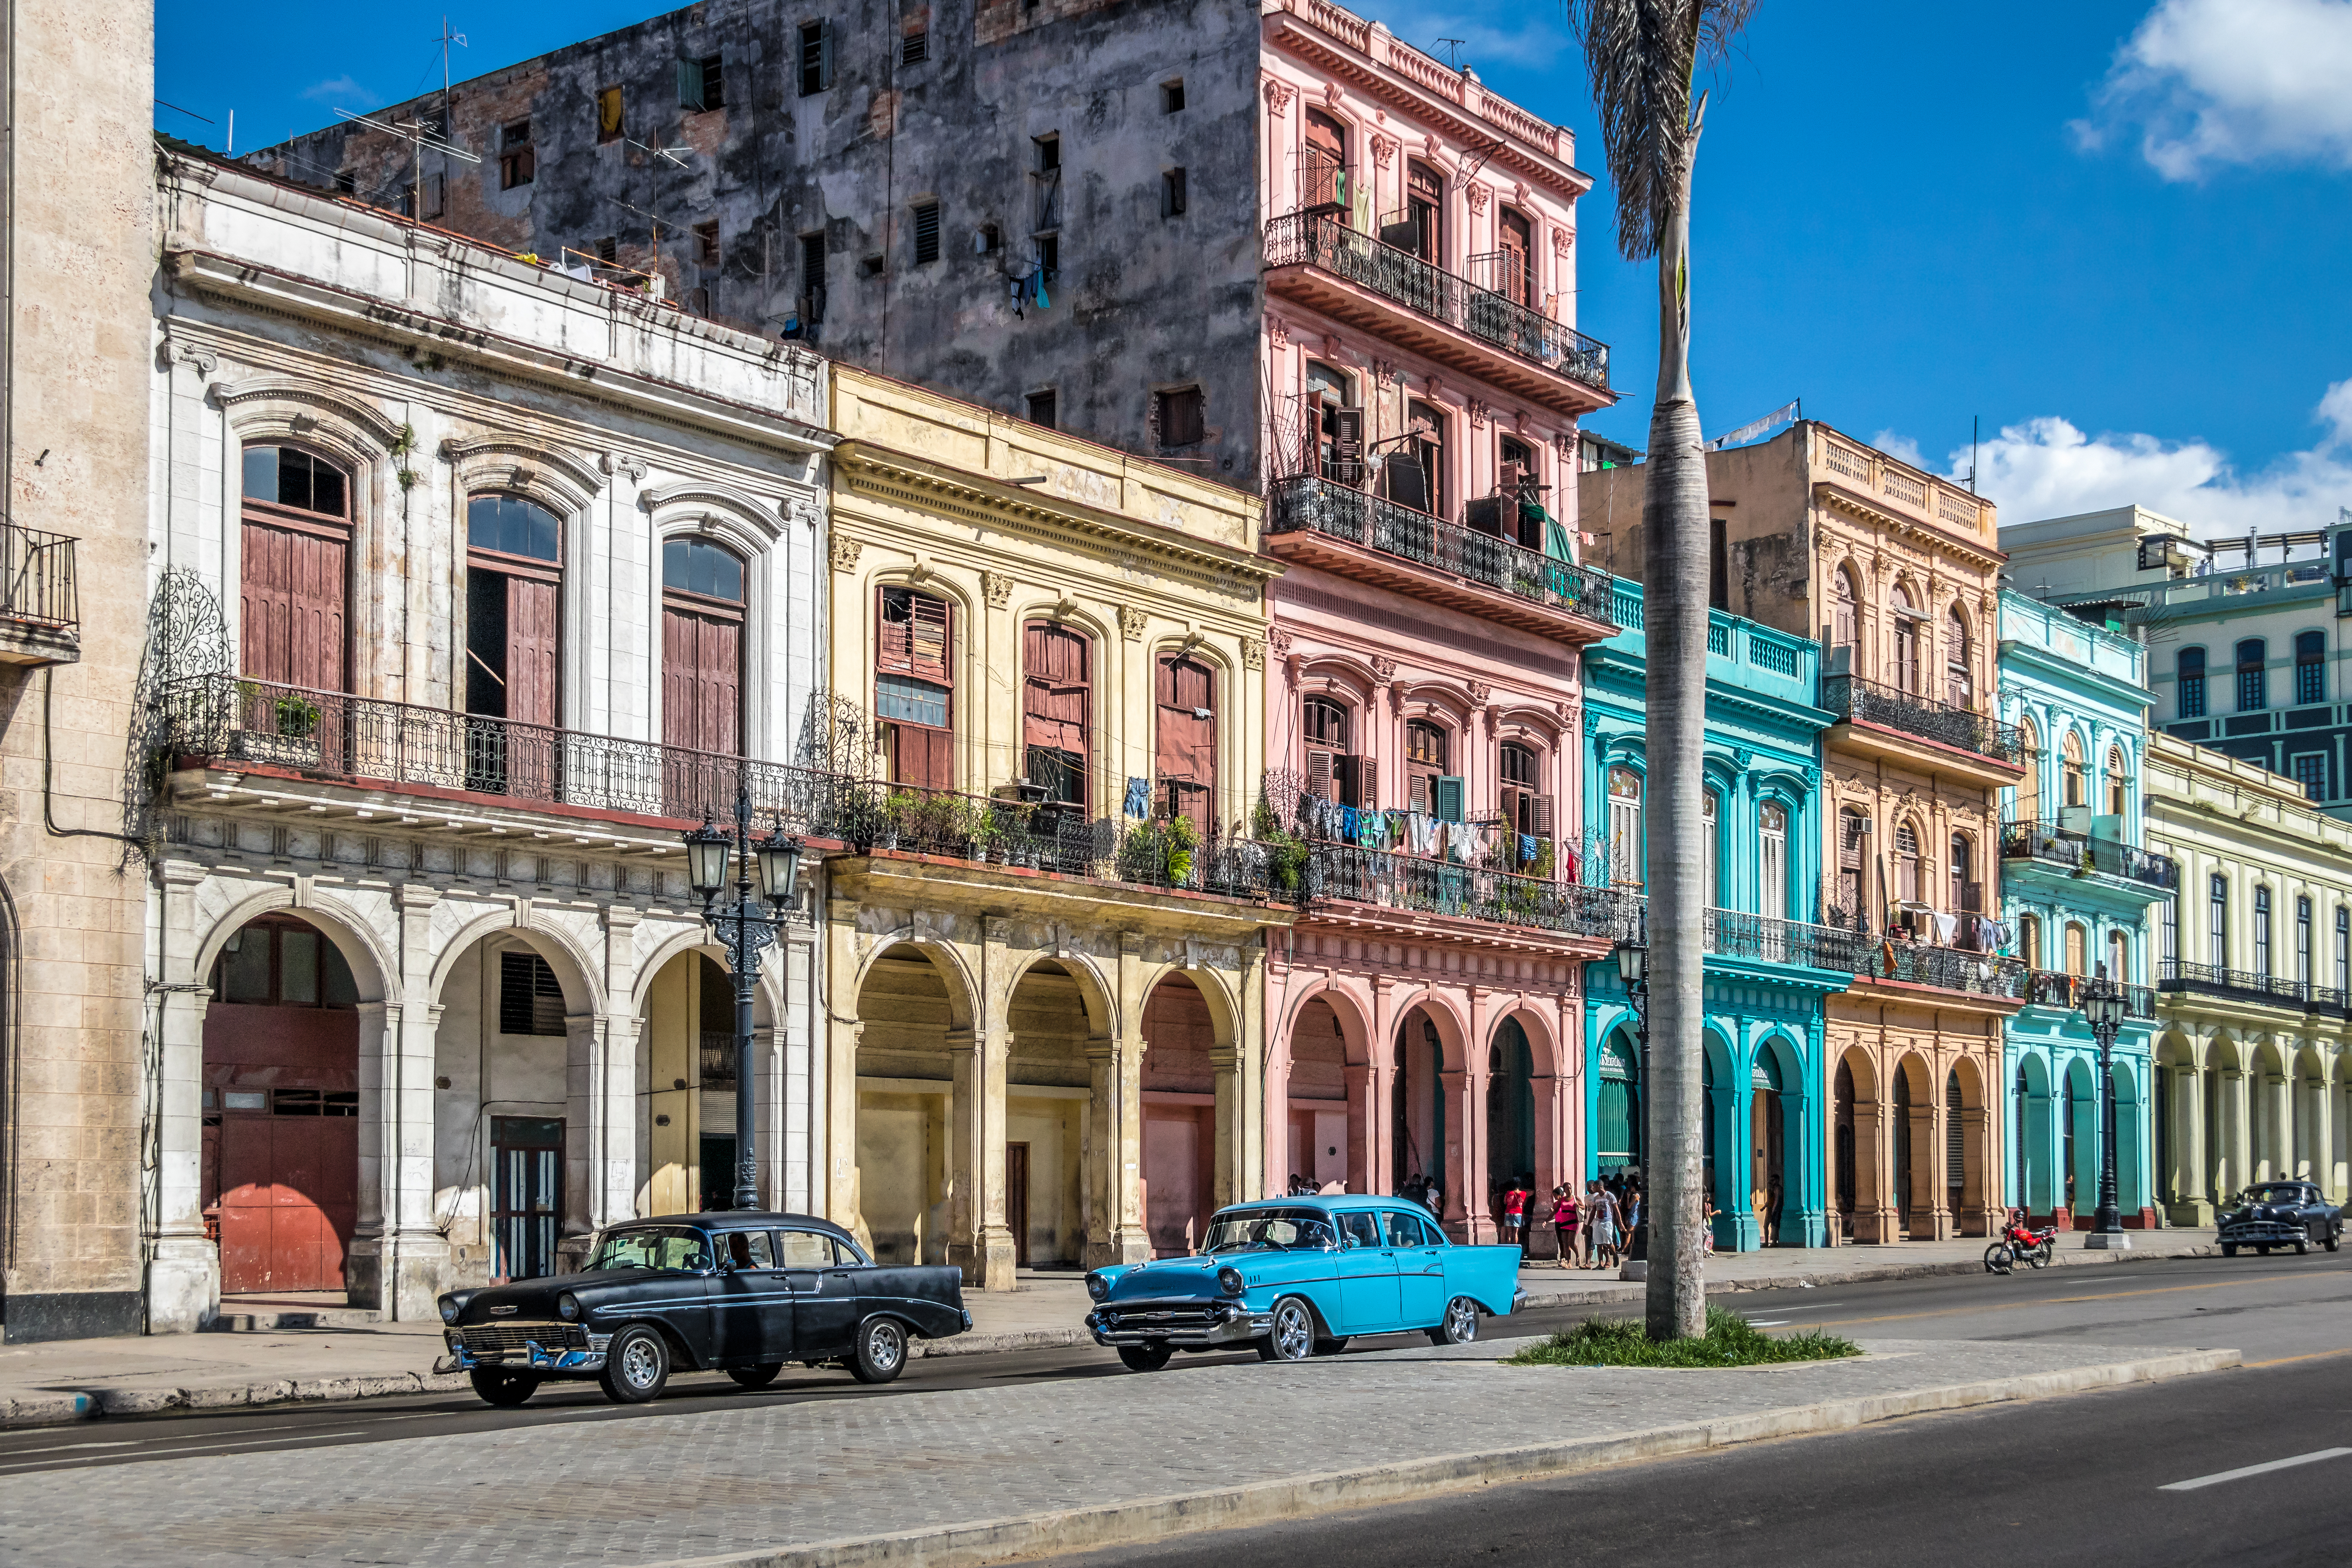     L'ambassade américaine reprend la délivrance de visa à La Havane

